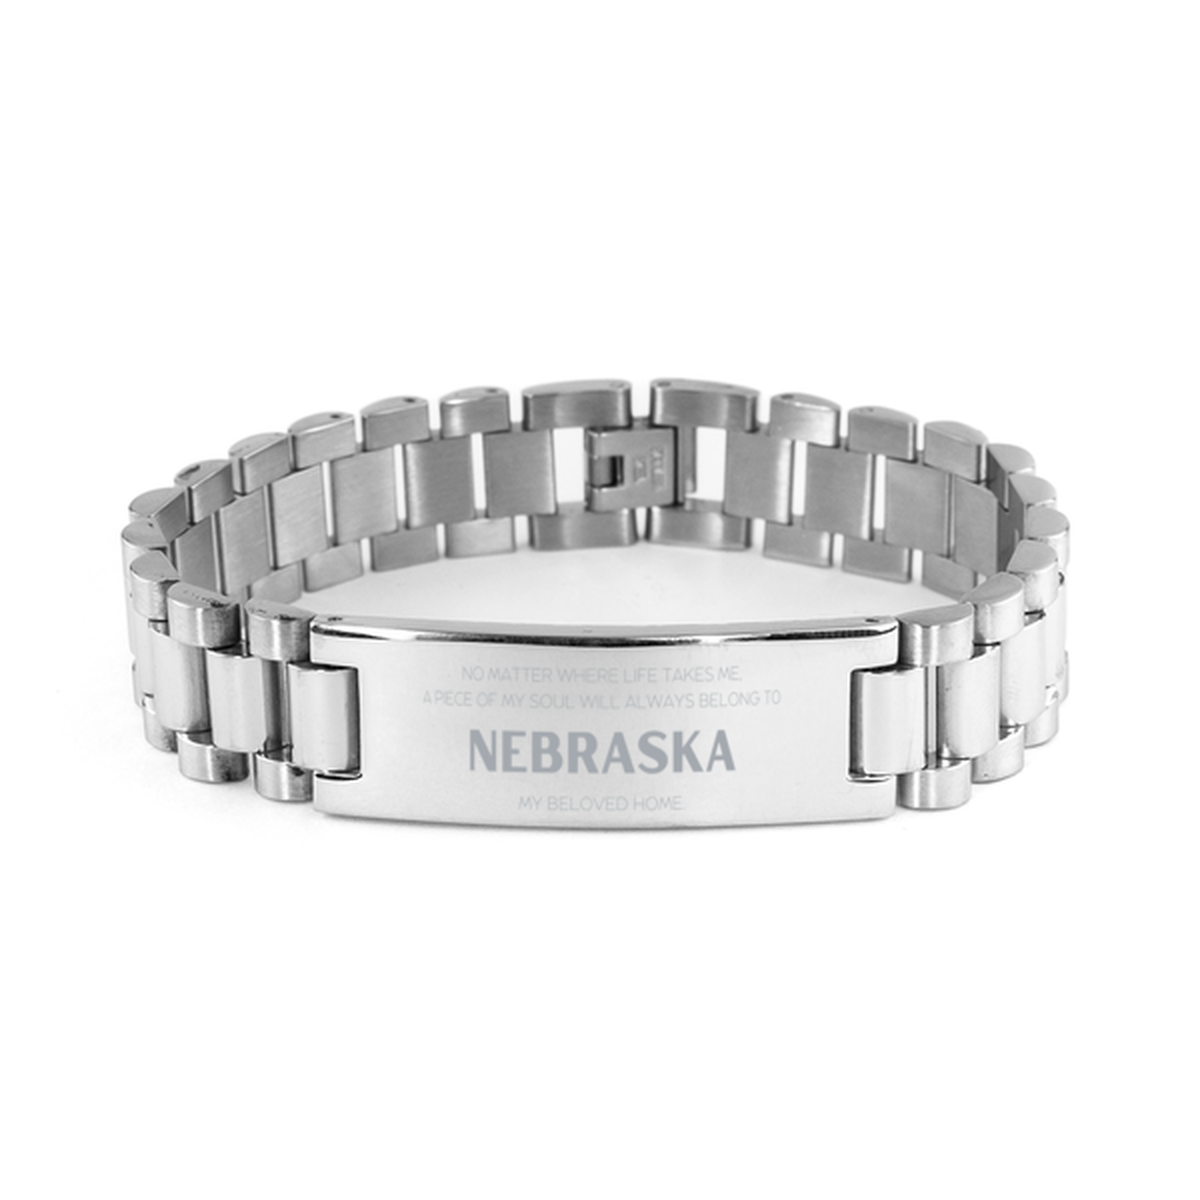 Love Nebraska State Gifts, My soul will always belong to Nebraska, Proud Ladder Stainless Steel Bracelet, Birthday Unique Gifts For Nebraska Men, Women, Friends